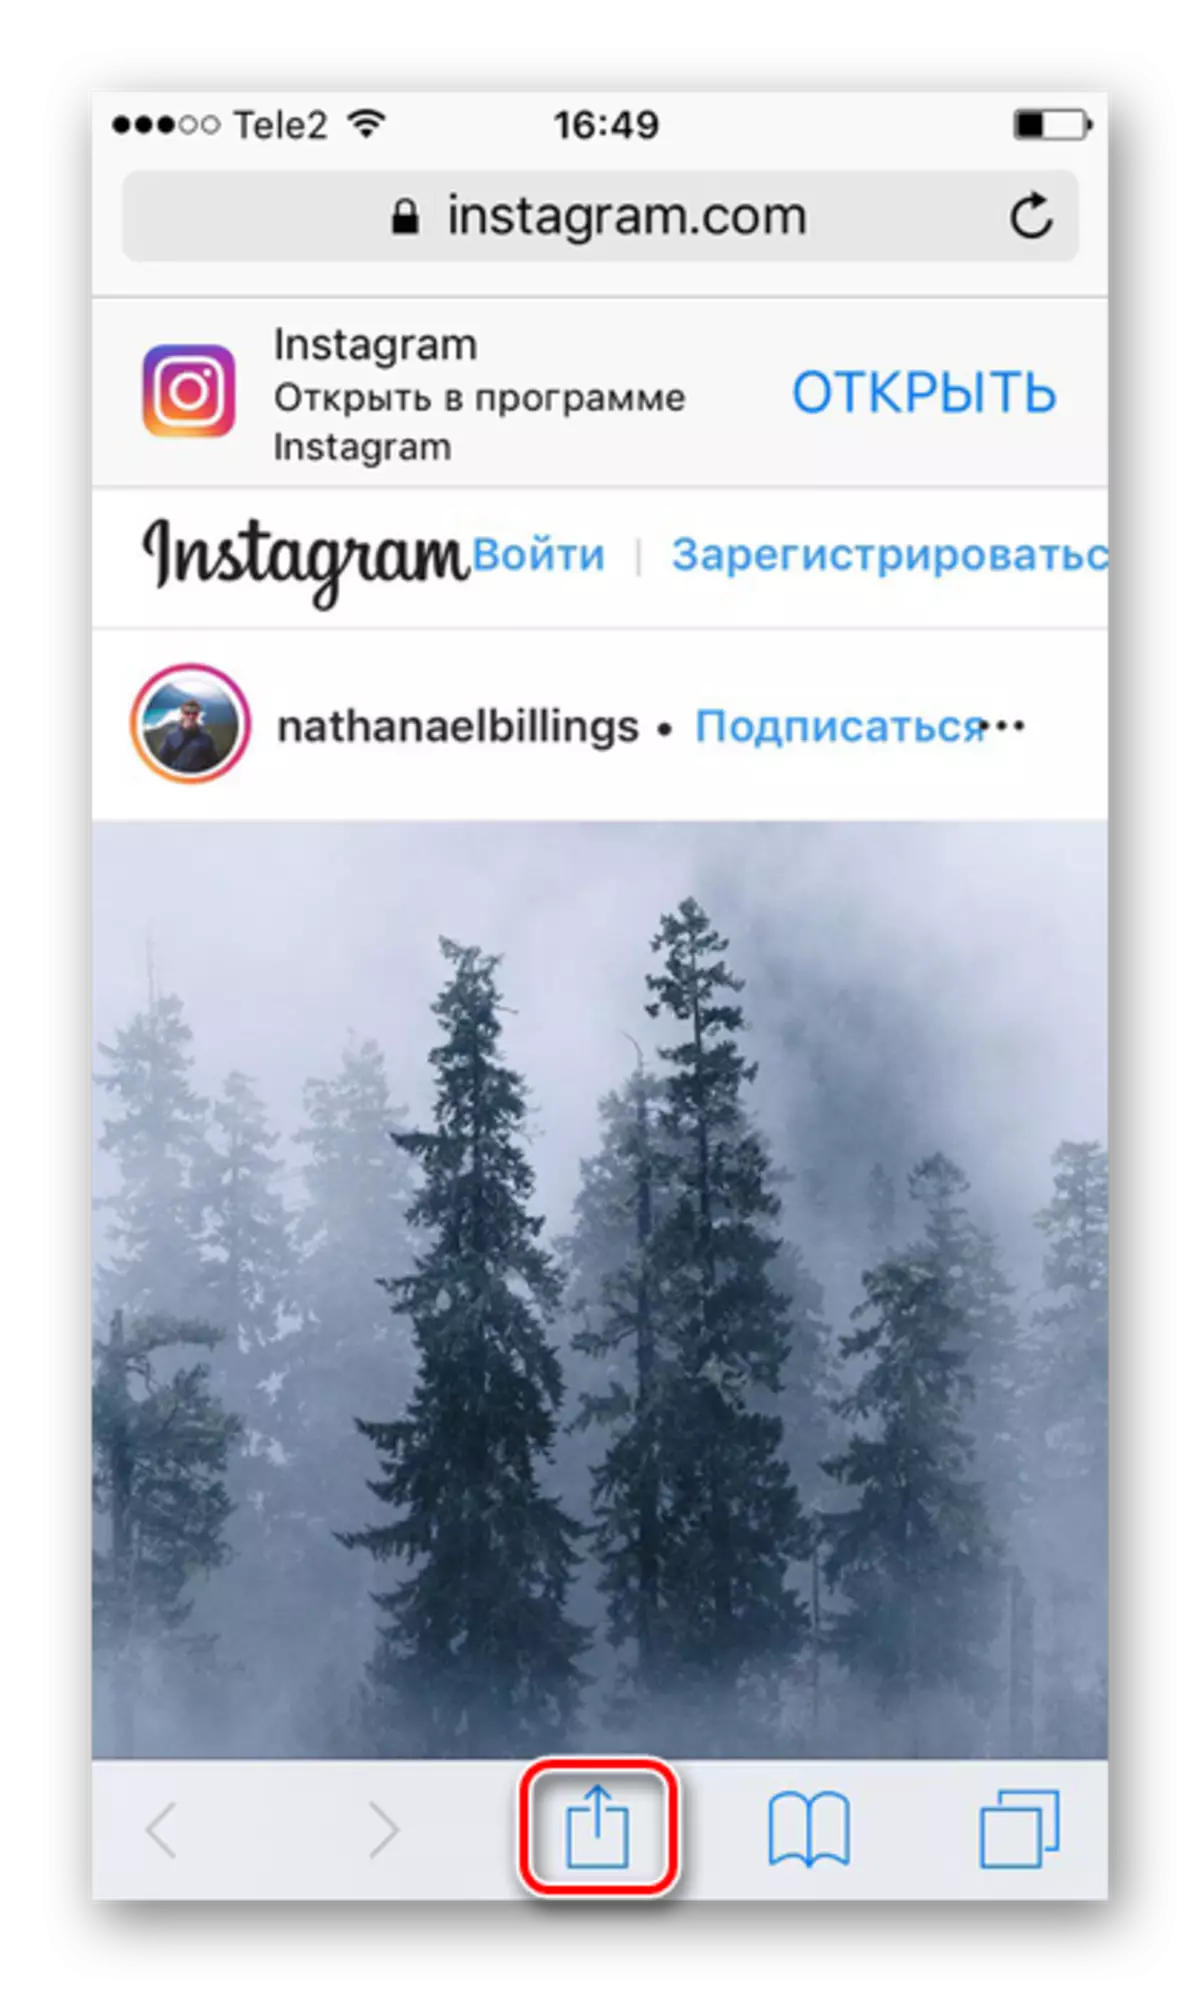 დაწკაპვით ხატი გაზიარება ჩამოტვირთვა ფოტოები Instagram on iPhone